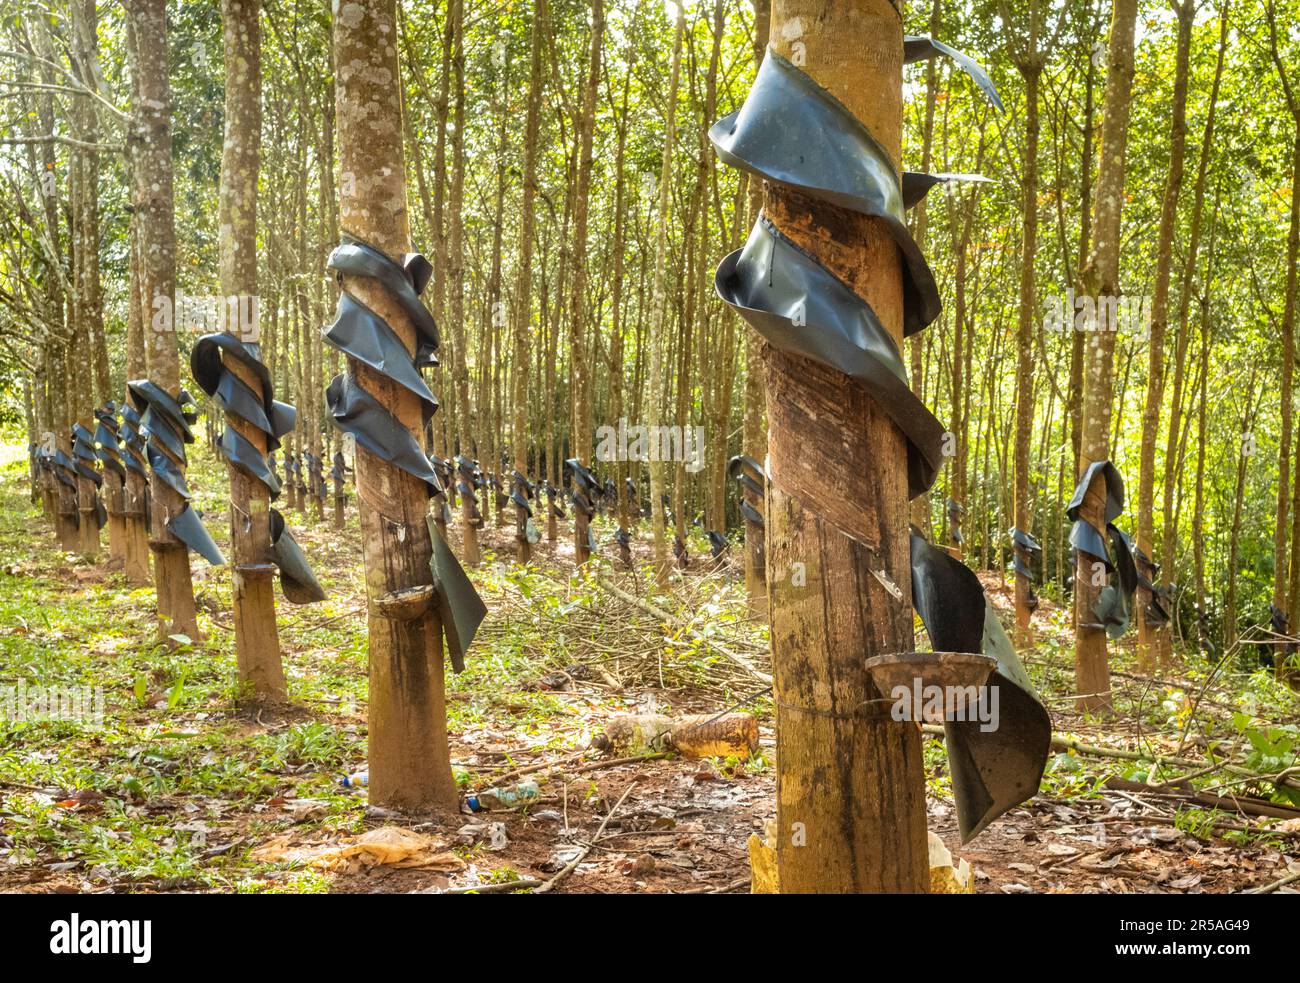 Eine Gummiplantage mit geschnittenen Rillen und Schüsseln zum Sammeln von  Latex auf einem Hügel im Bezirk Sa Thay, Provinz Kontum, Vietnam. Gummi war  introdu Stockfotografie - Alamy